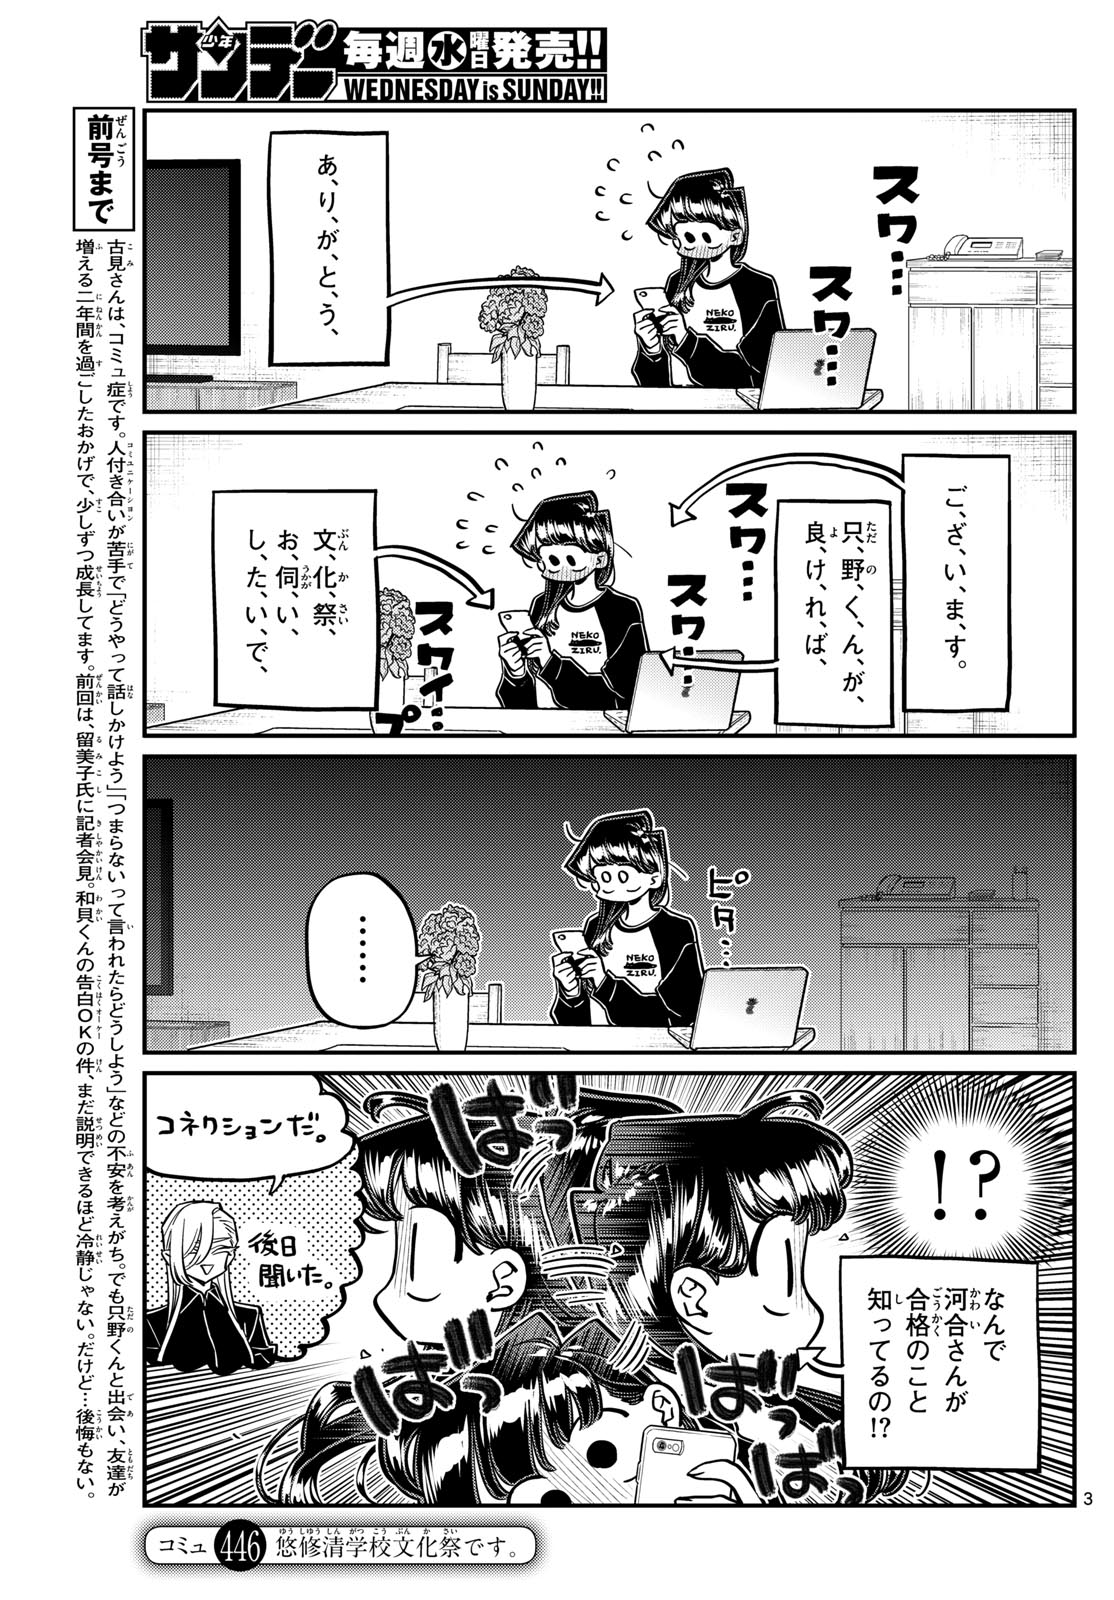 Komi-san wa Komyushou Desu - Chapter 446 - Page 3